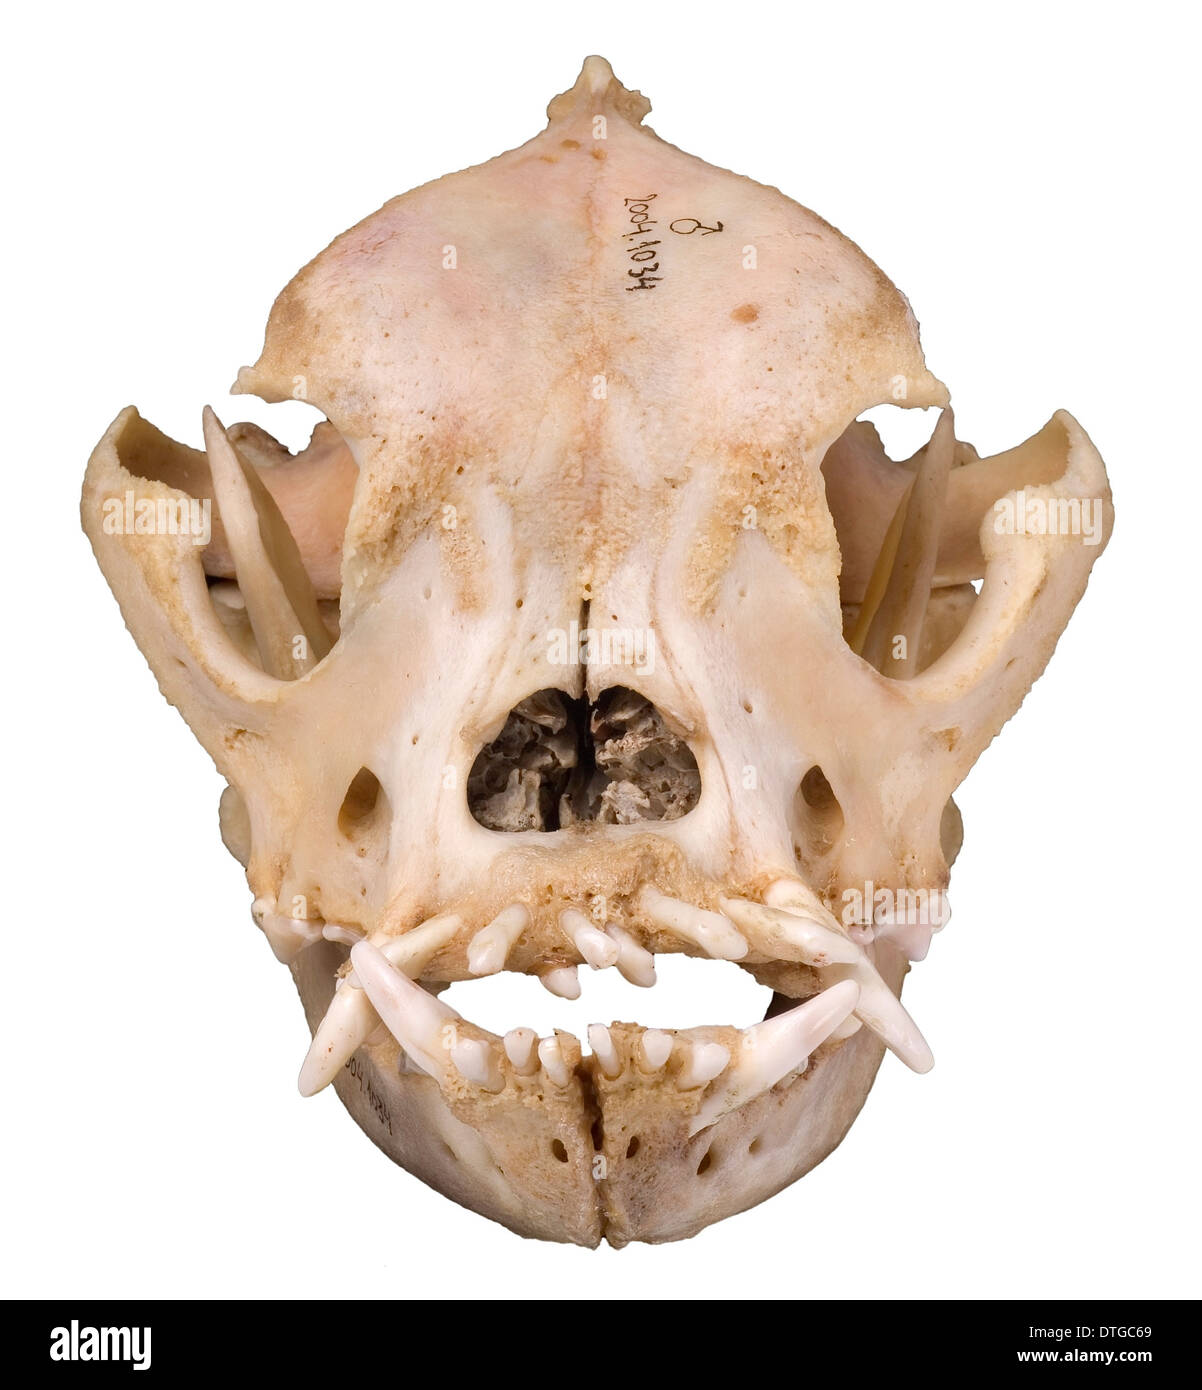 Bulldog cranium 2004 Stock Photo